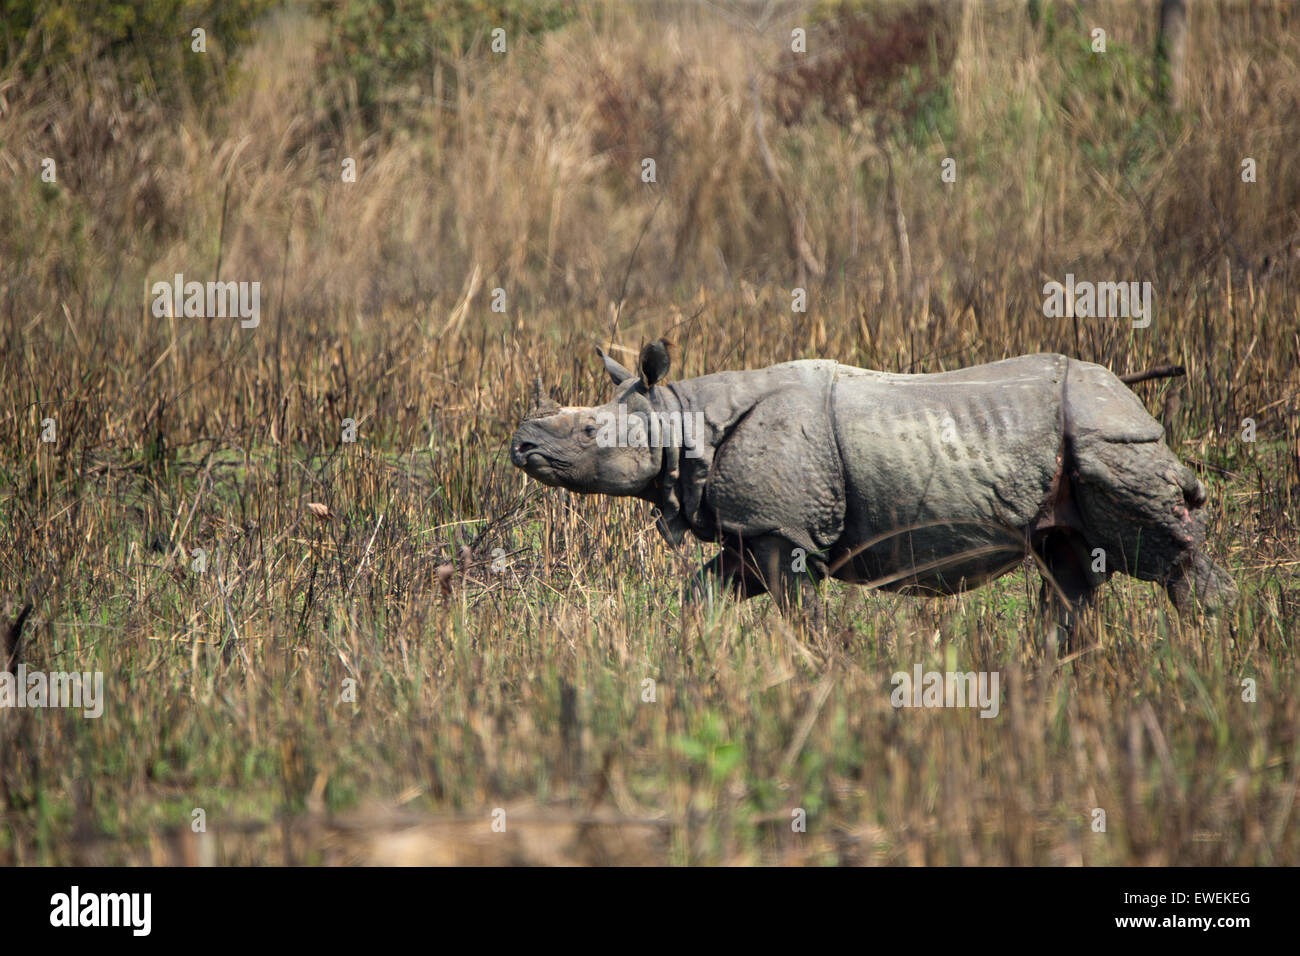 Un rhinocéros indien au parc national de Chitwan, au Népal Banque D'Images